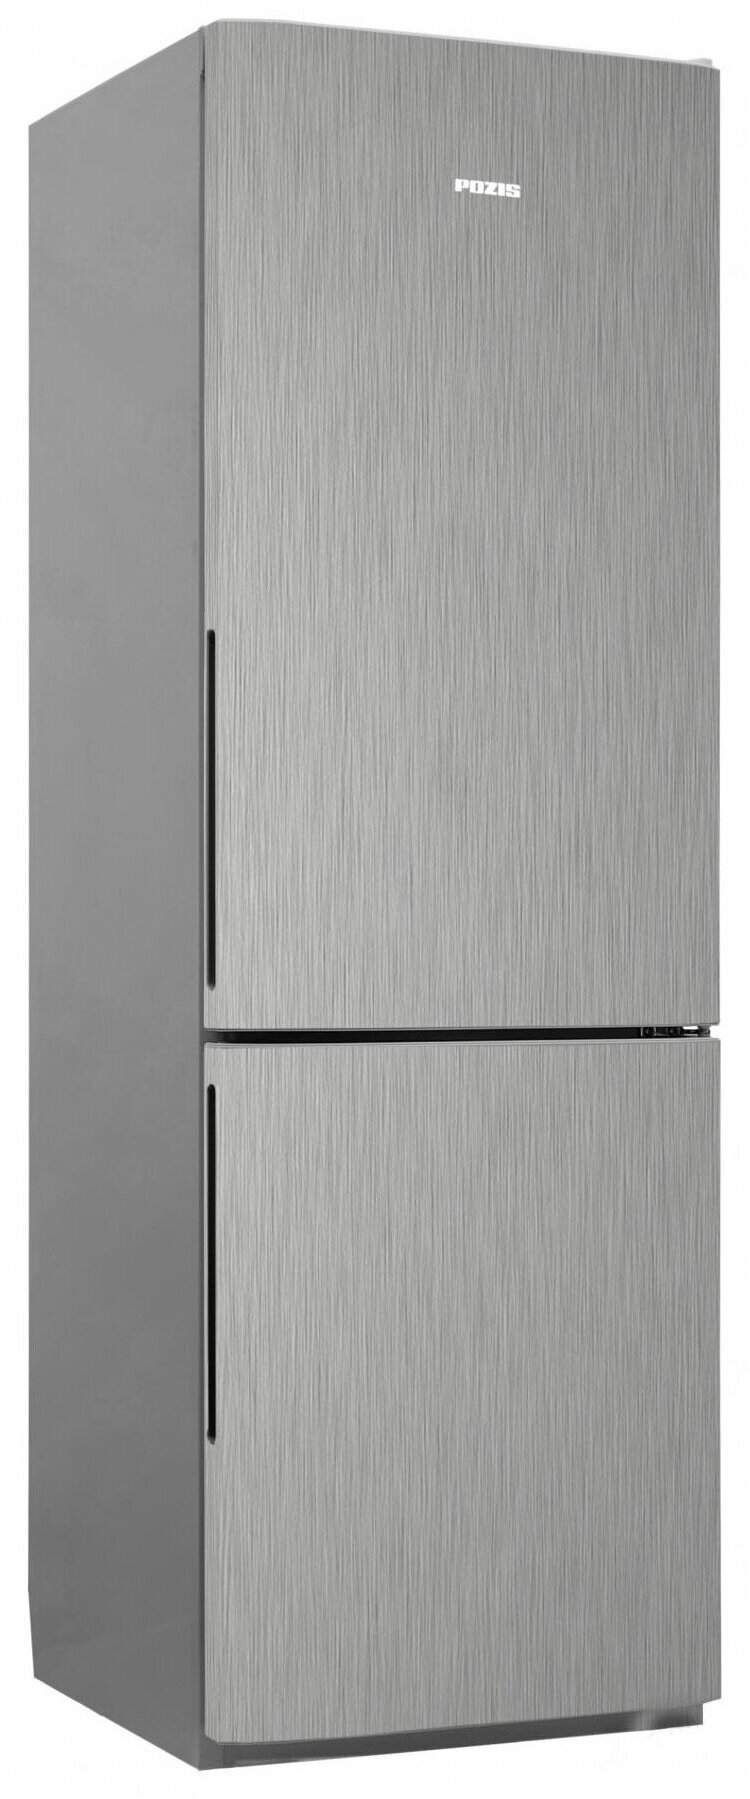 Холодильник POZIS RK FNF 170 серебристый металлопласт ручки вертикальные